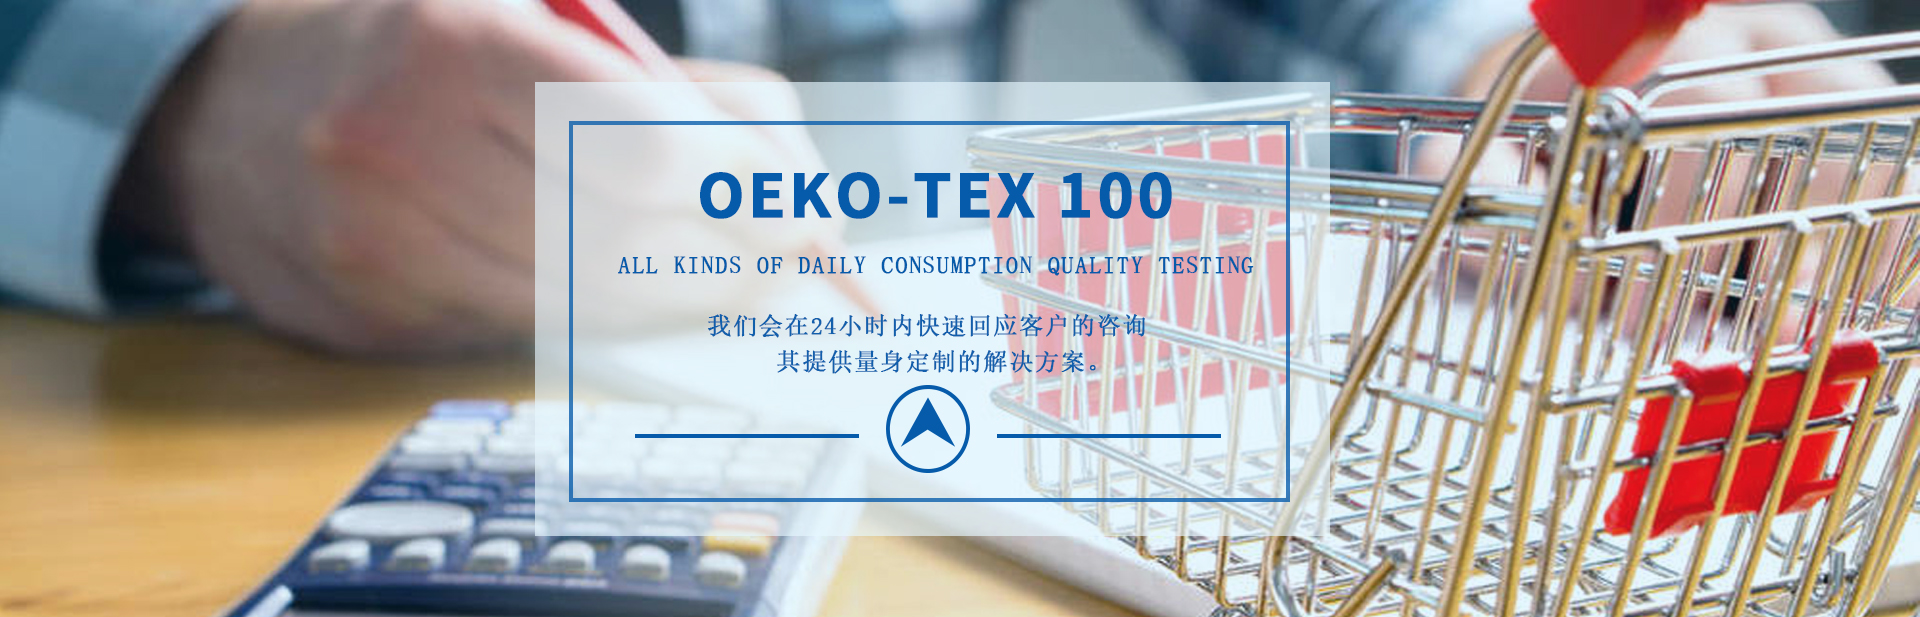 Oeko-tex认证